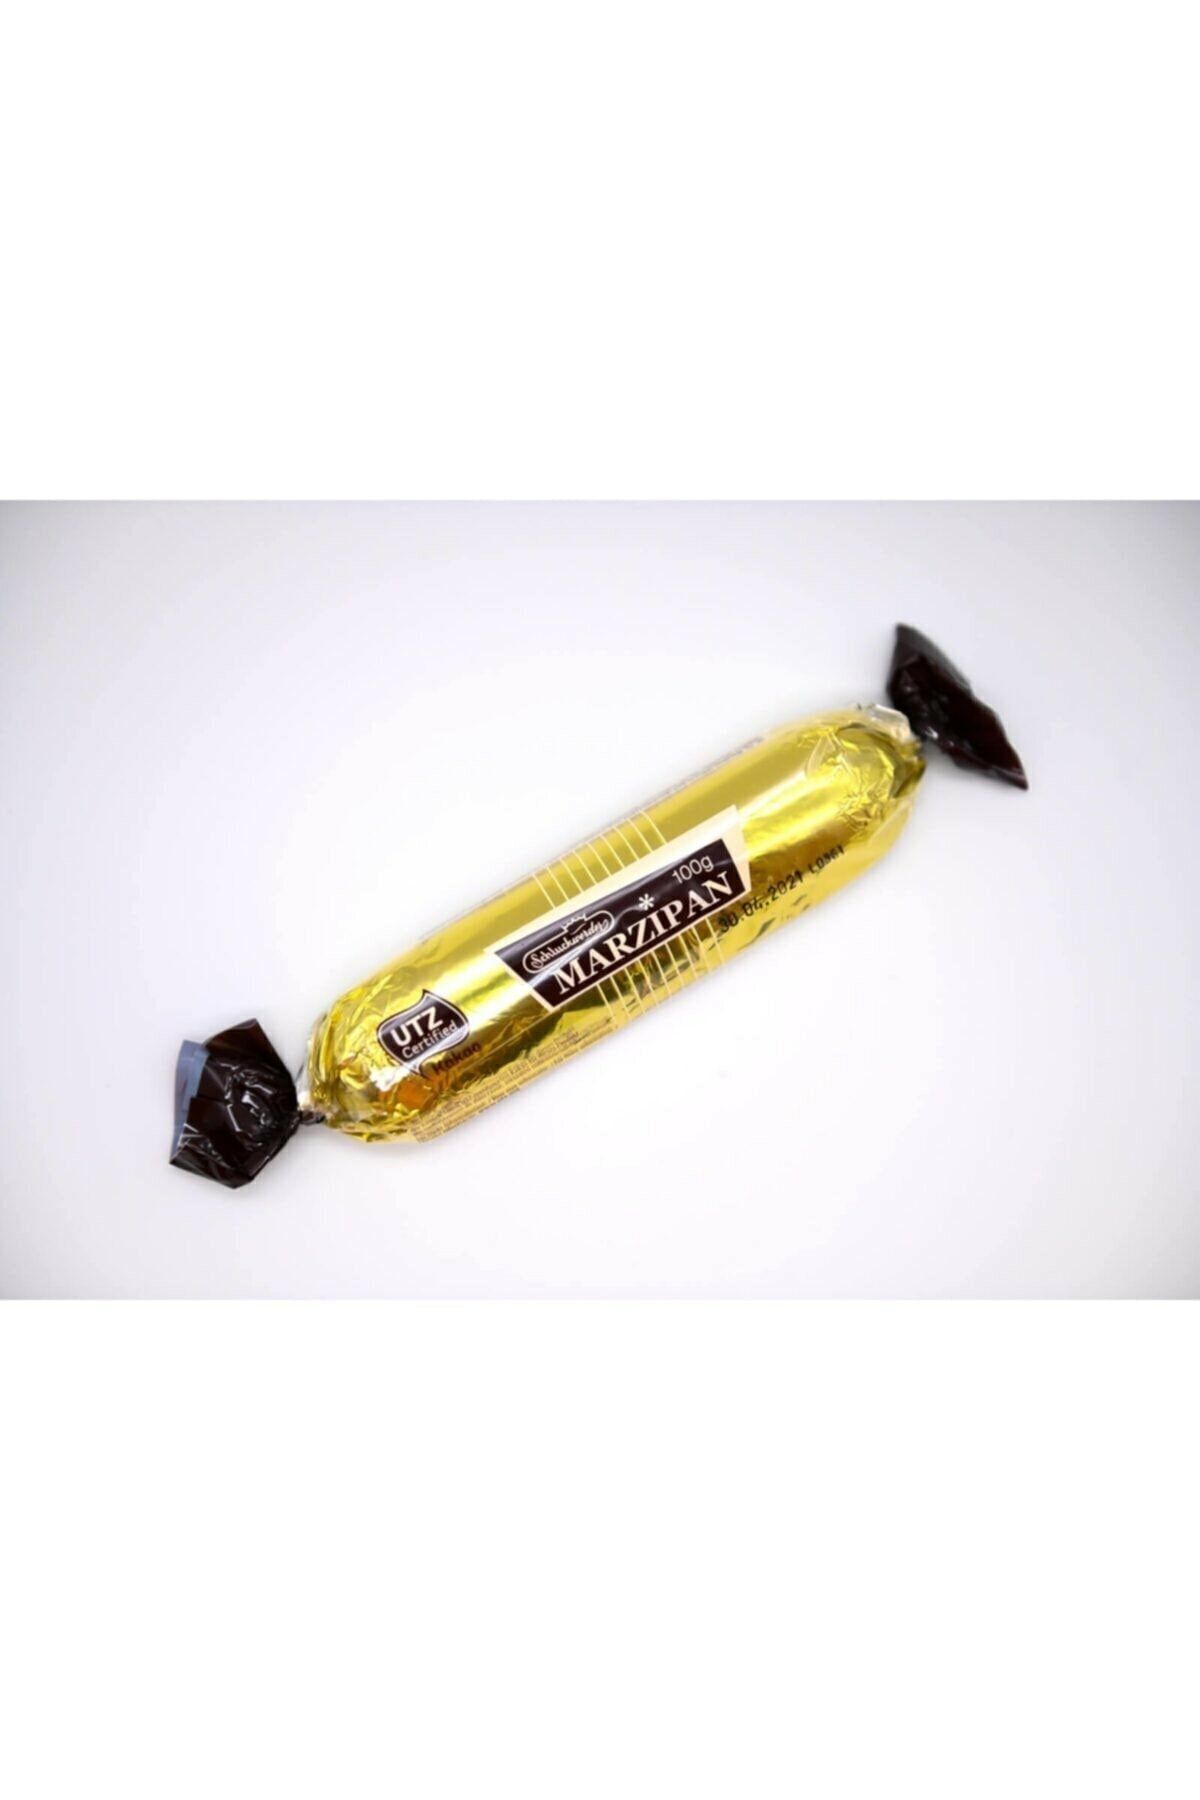 Schluckwerder Dark Chocolate Covered Marzipan Bar 100g